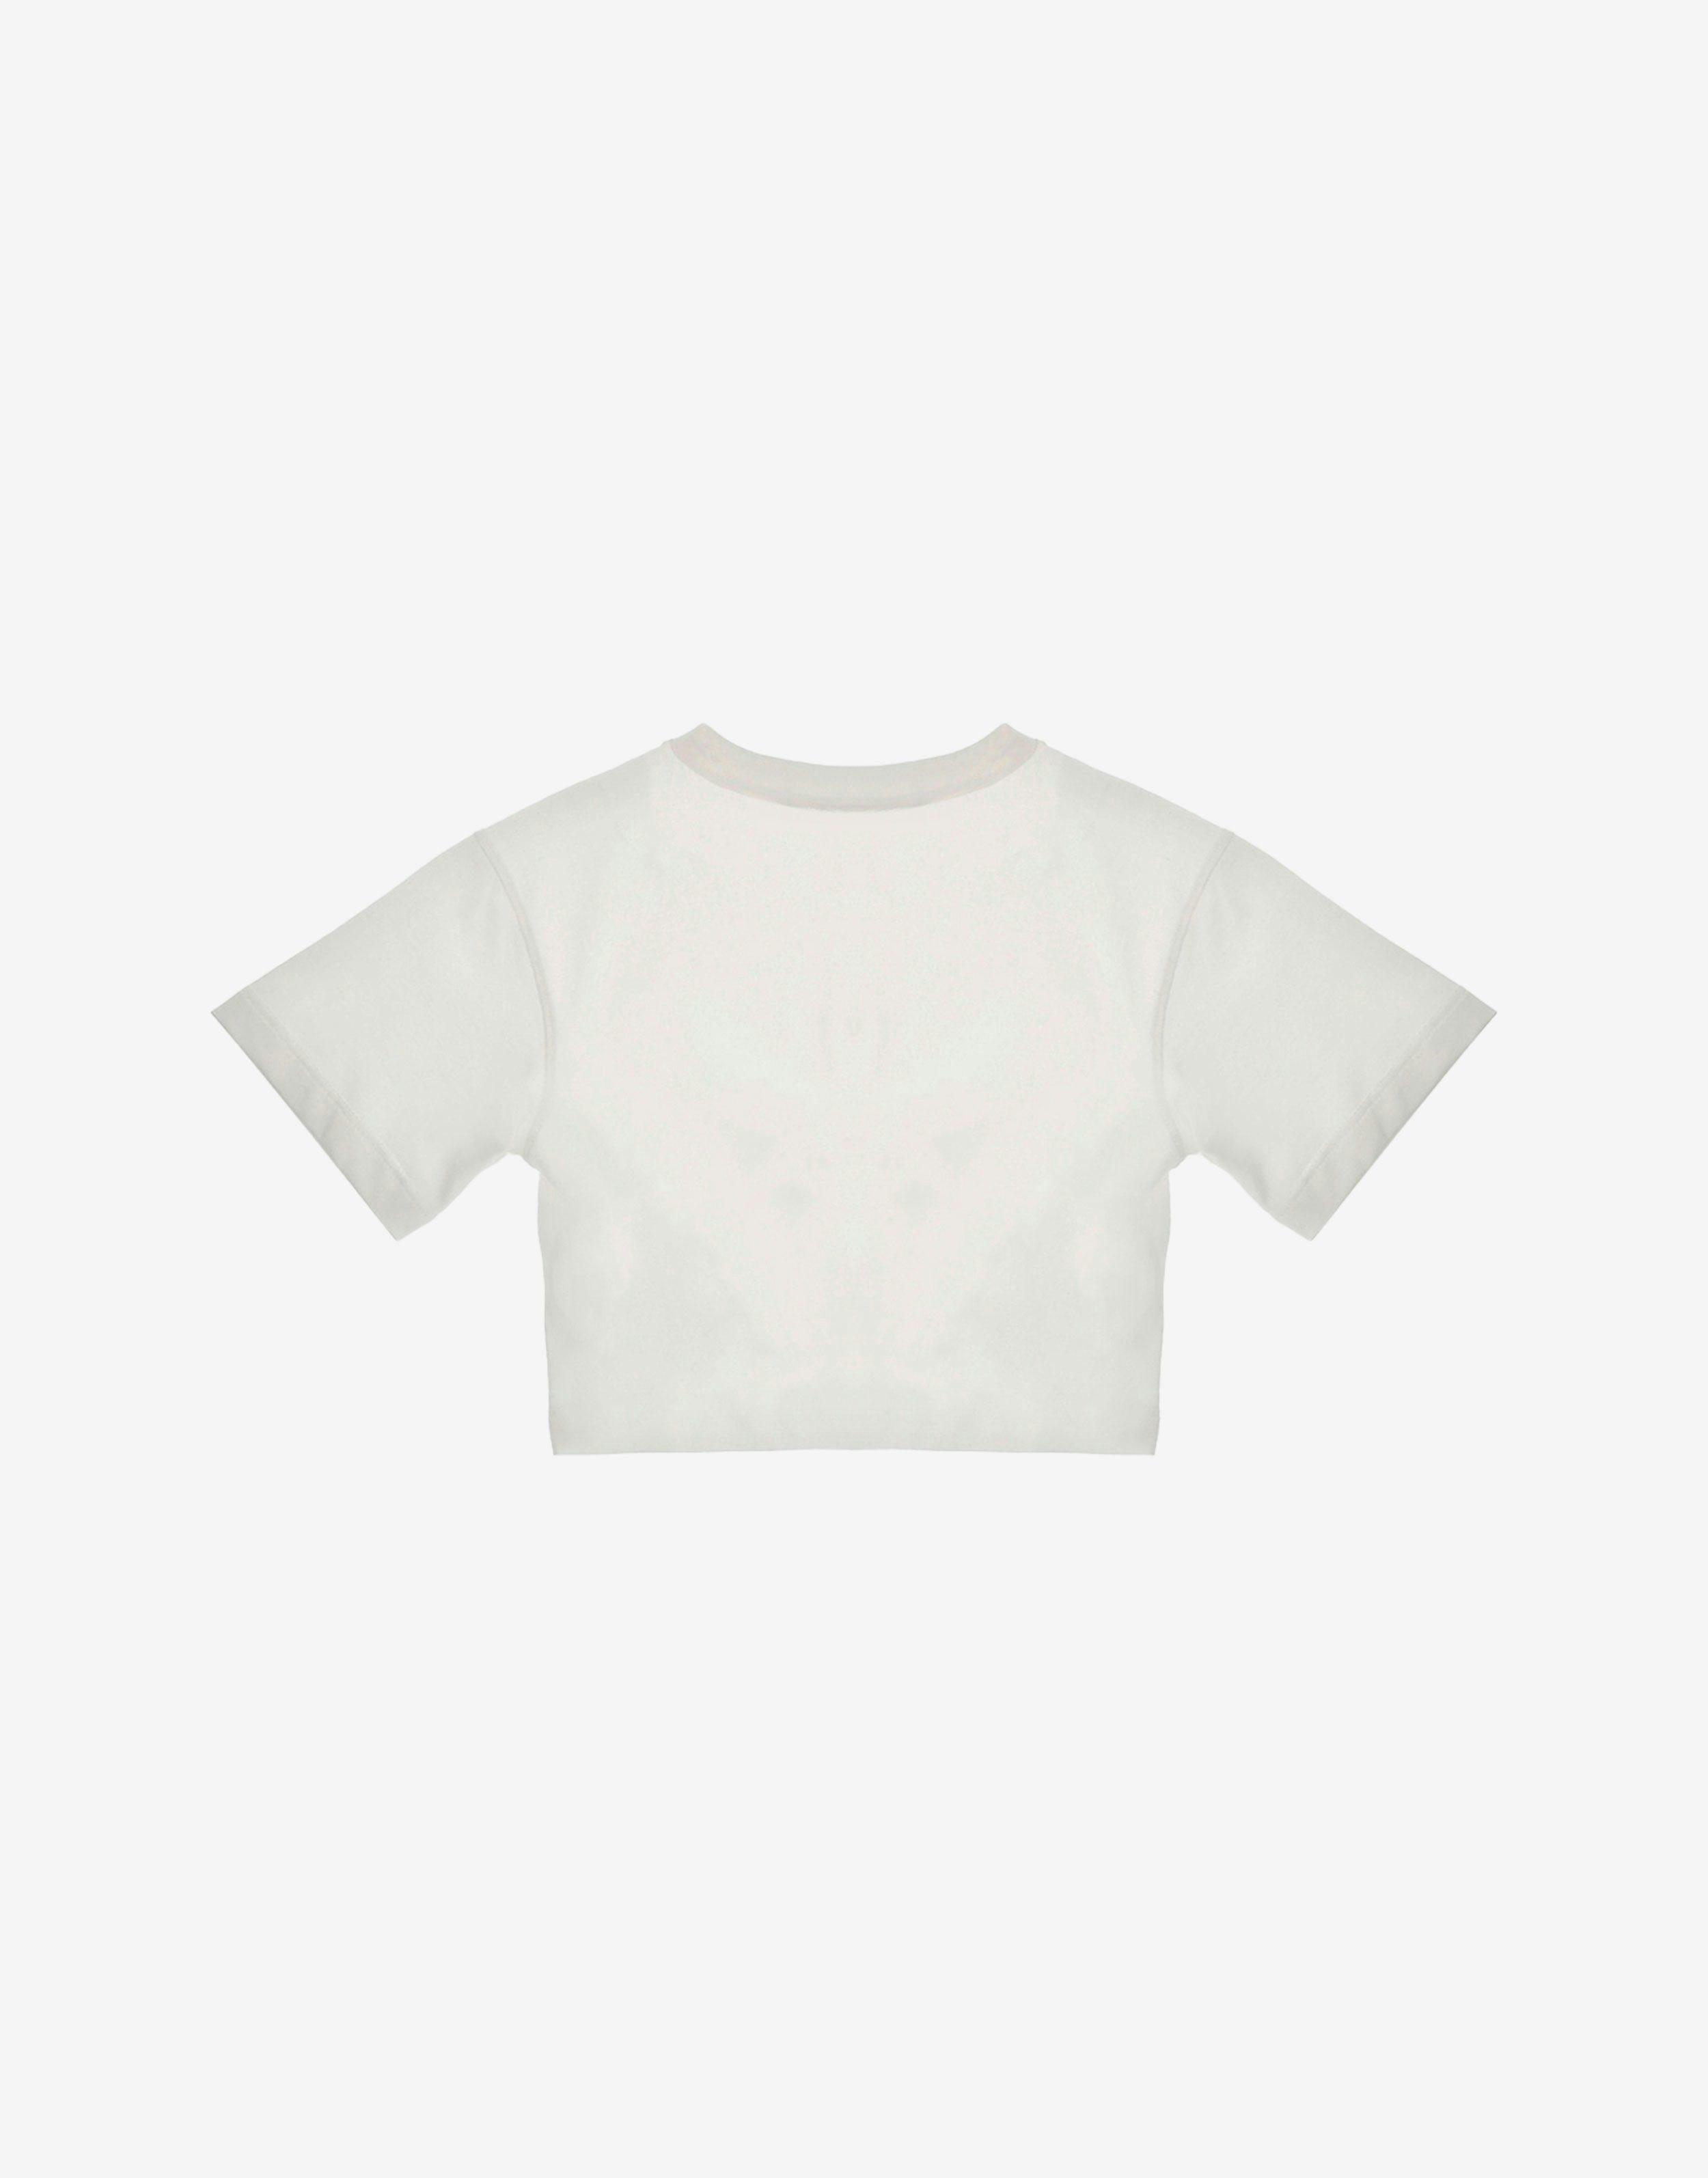 Camiseta infantil estilo «crop» con parche «doble P»